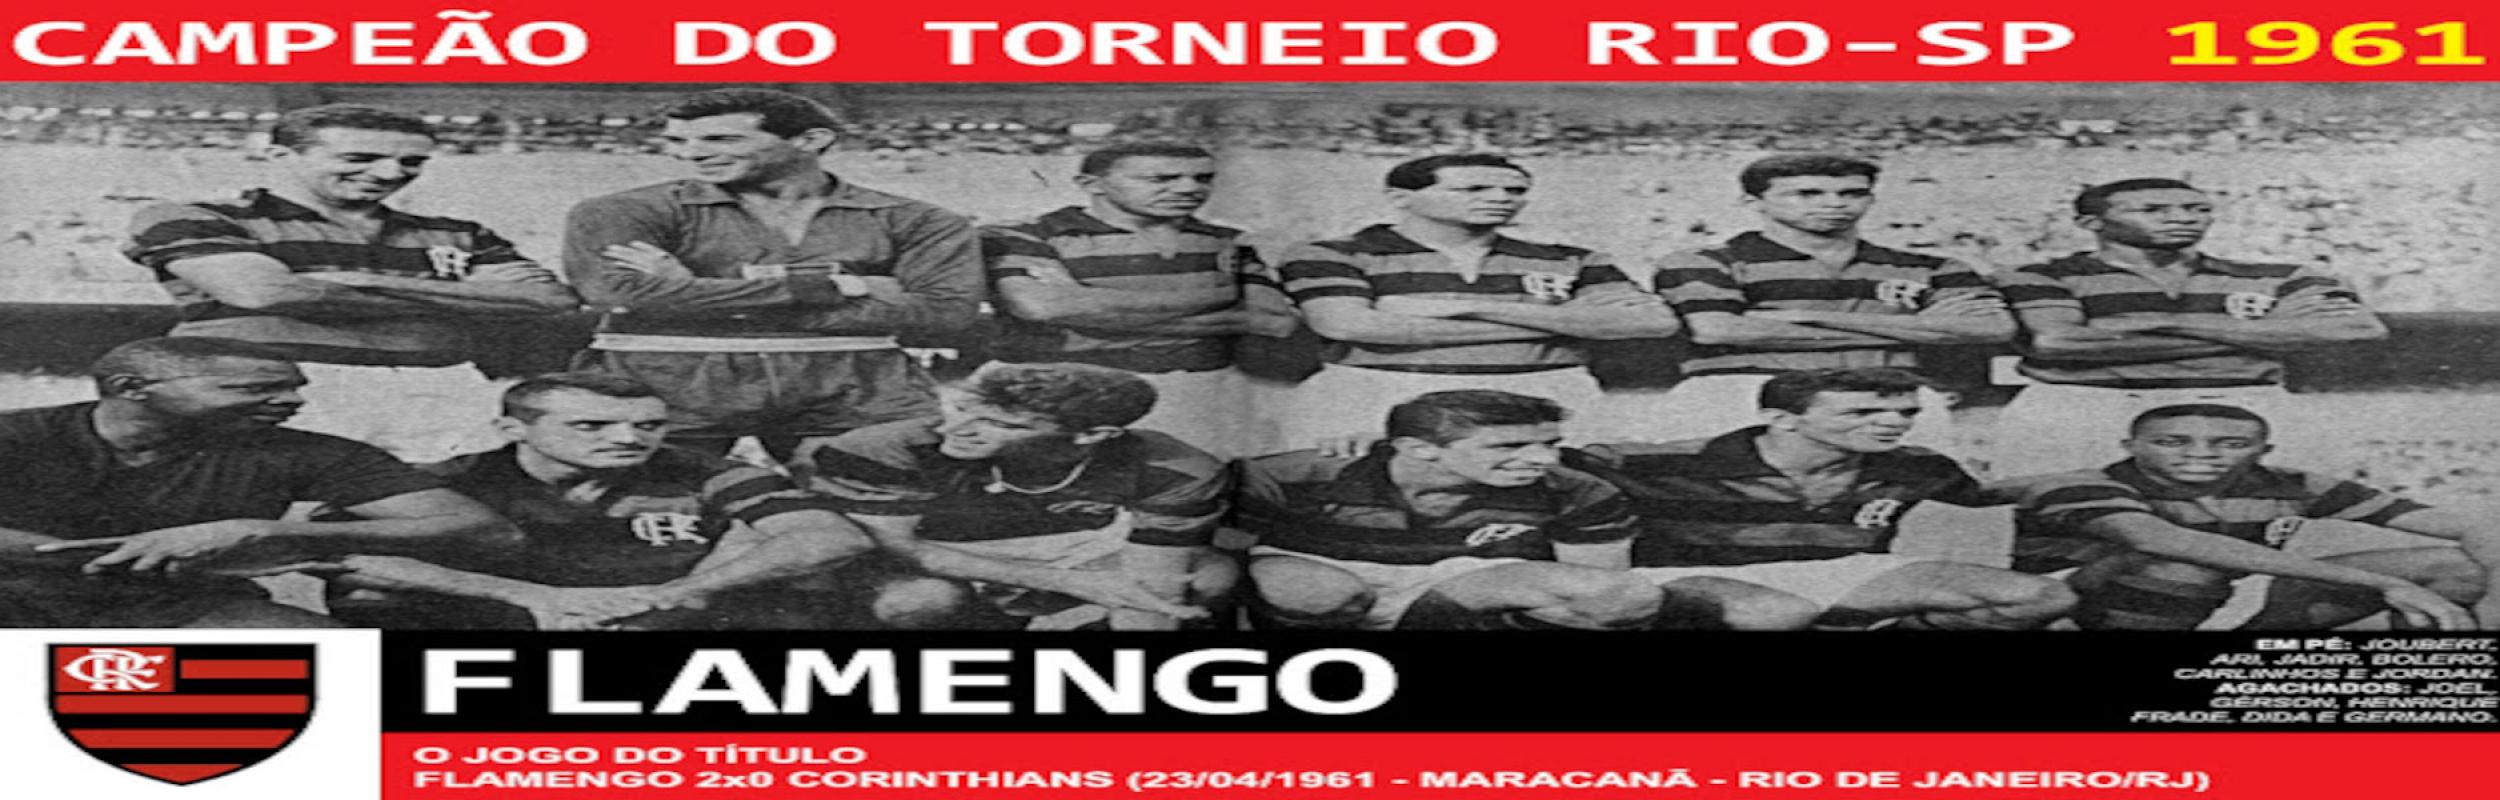 Torneio Rio-São Paulo 1961